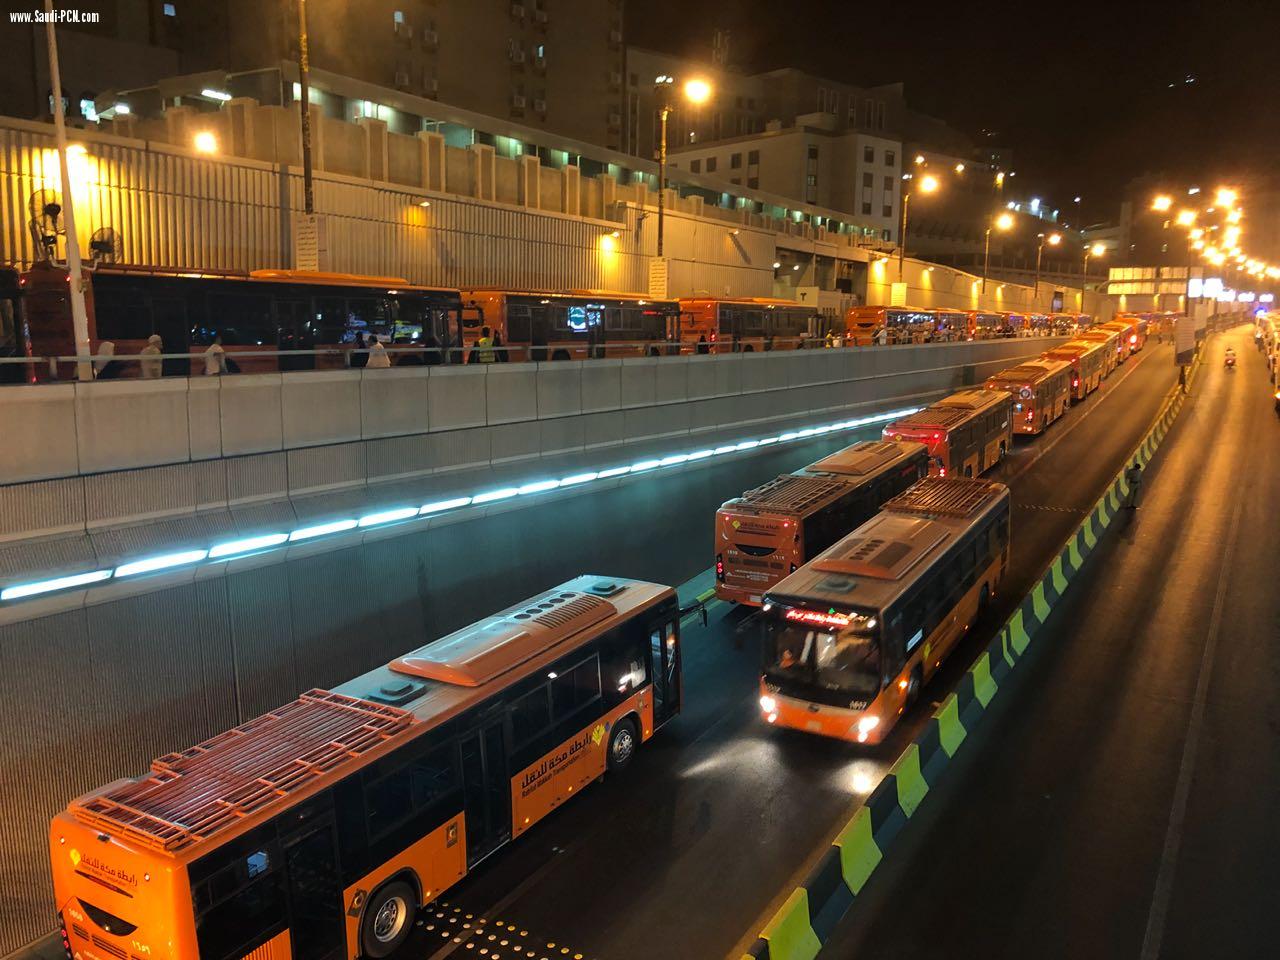 تشغيل خمس مواقع وتسيير (100)حافلة في النقل الترددي للمسجد الحرام خلال شهر رمضان 